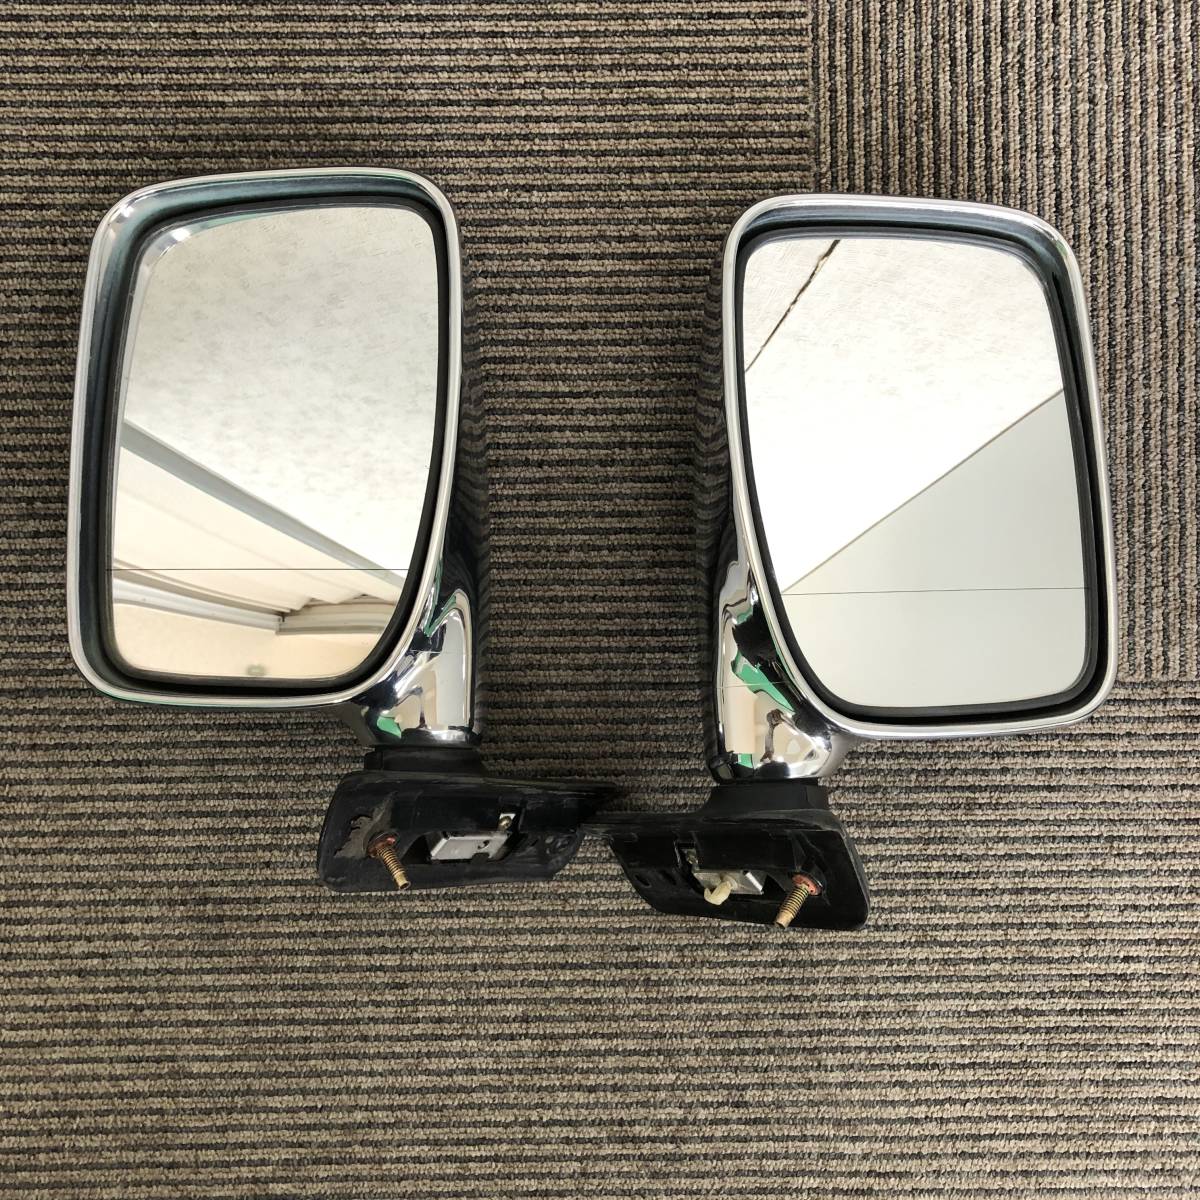  Daihatsu Move L600 L602 зеркало на двери левый и правый в комплекте металлизированный зеркало только электрический складывание ручной б/у рабочее состояние подтверждено 